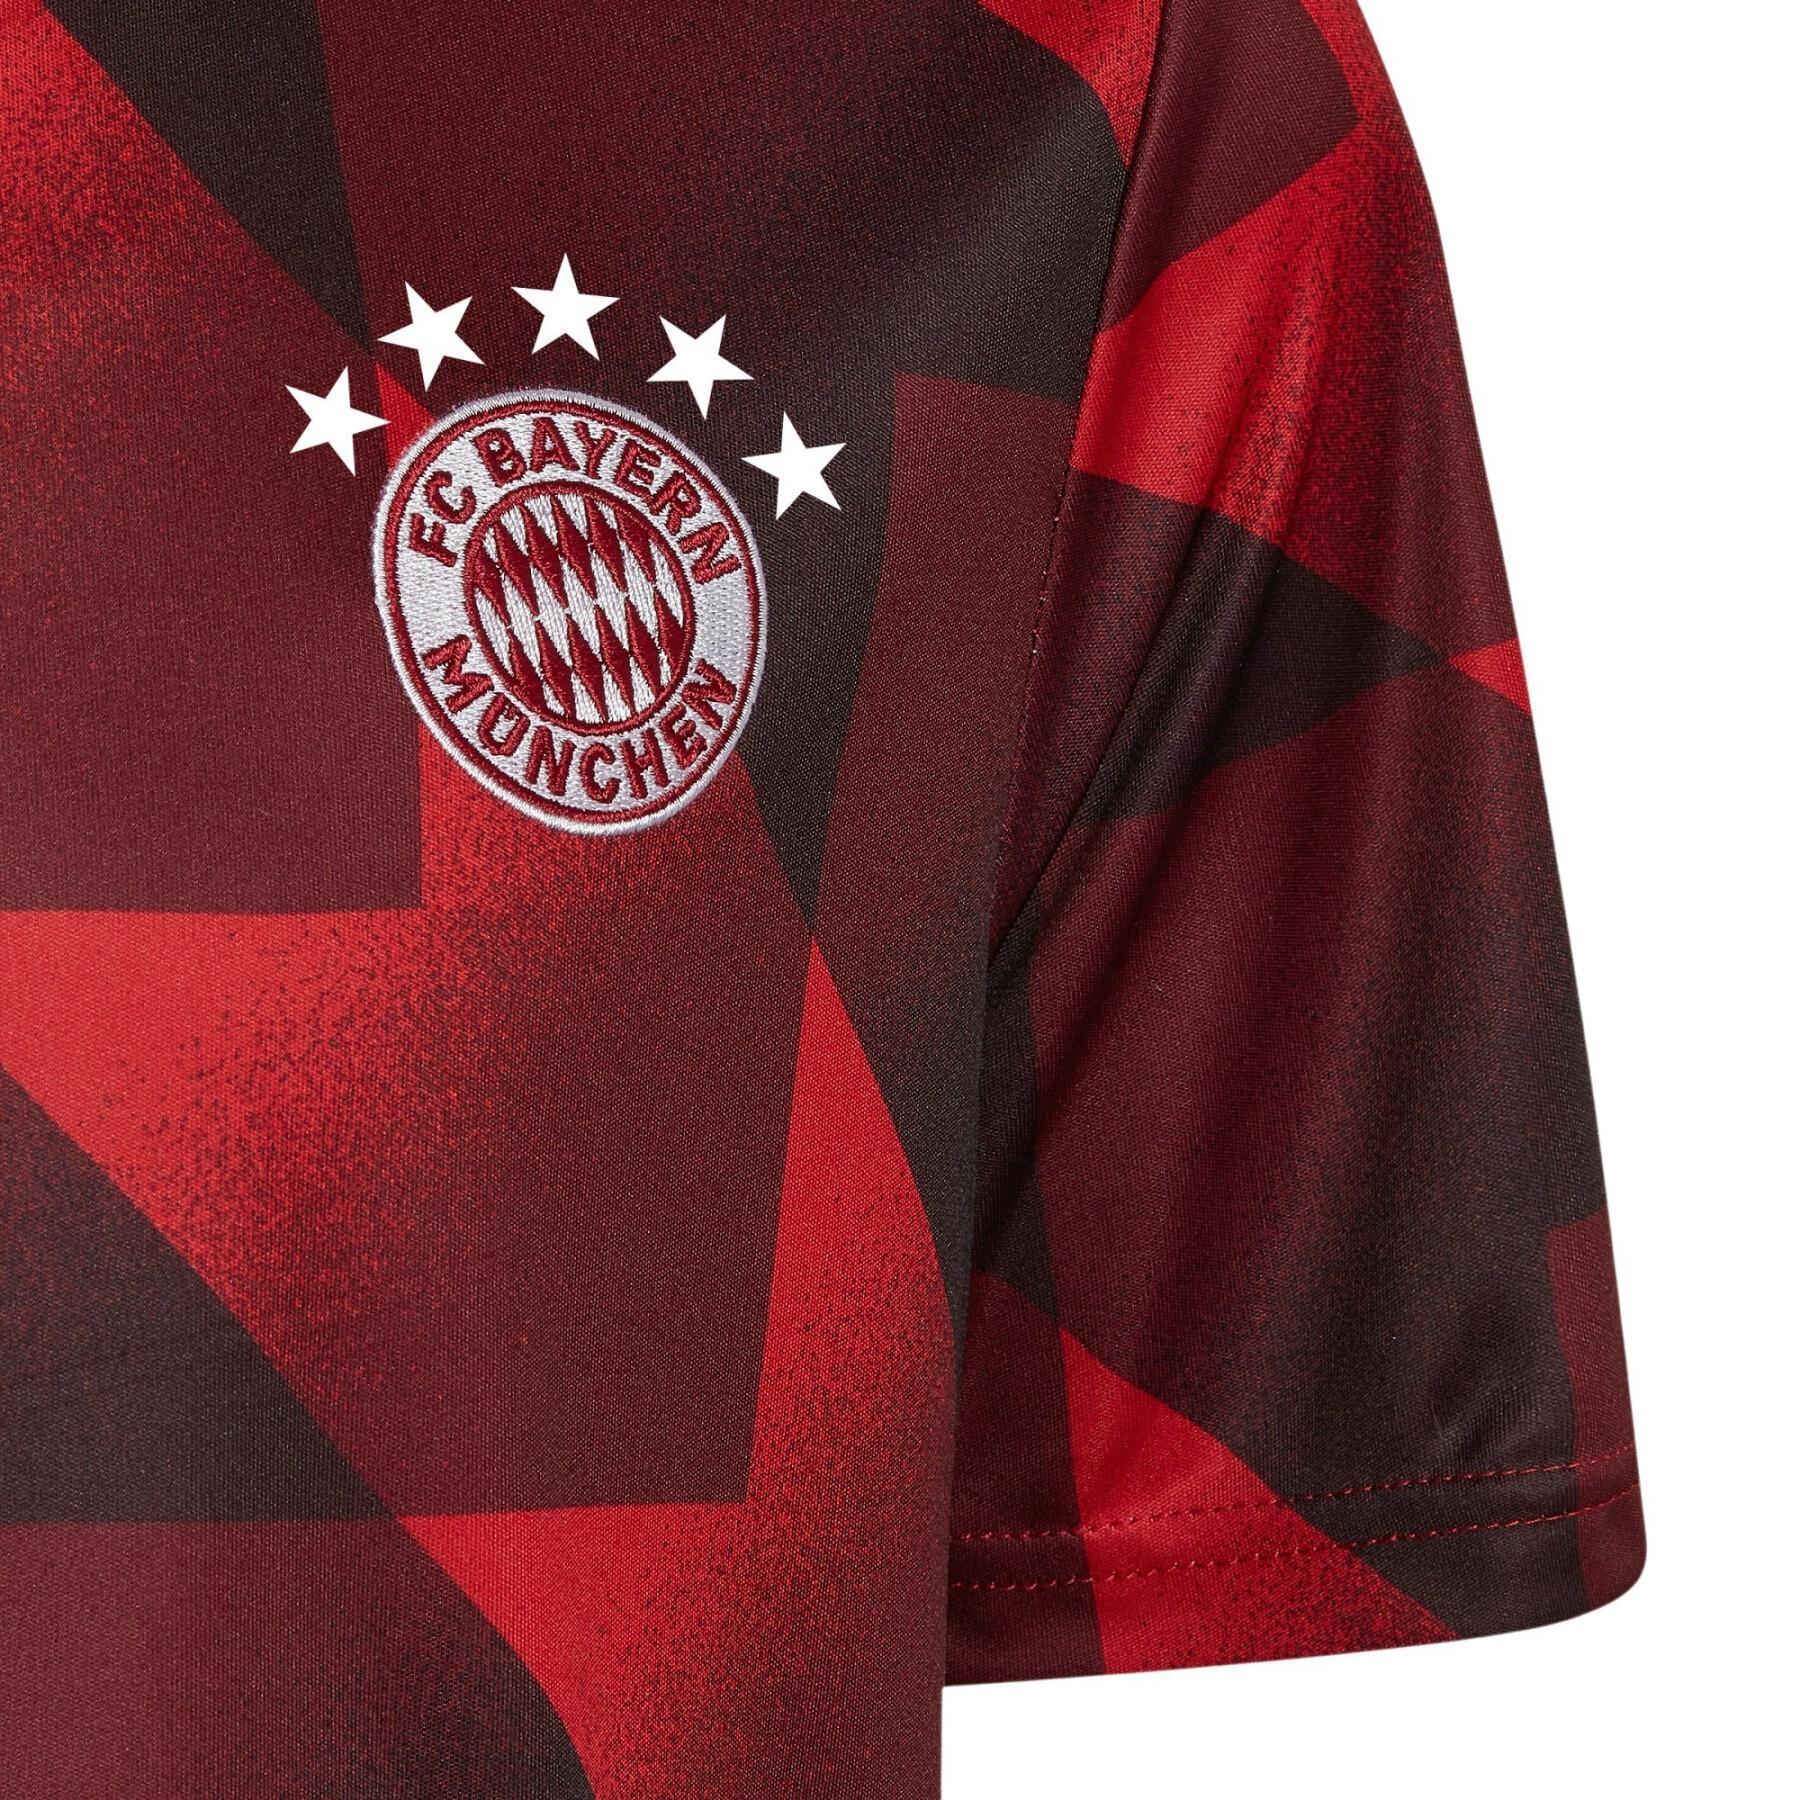 Koszulka rozgrzewkowa dla dzieci Bayern Munich 2022/23